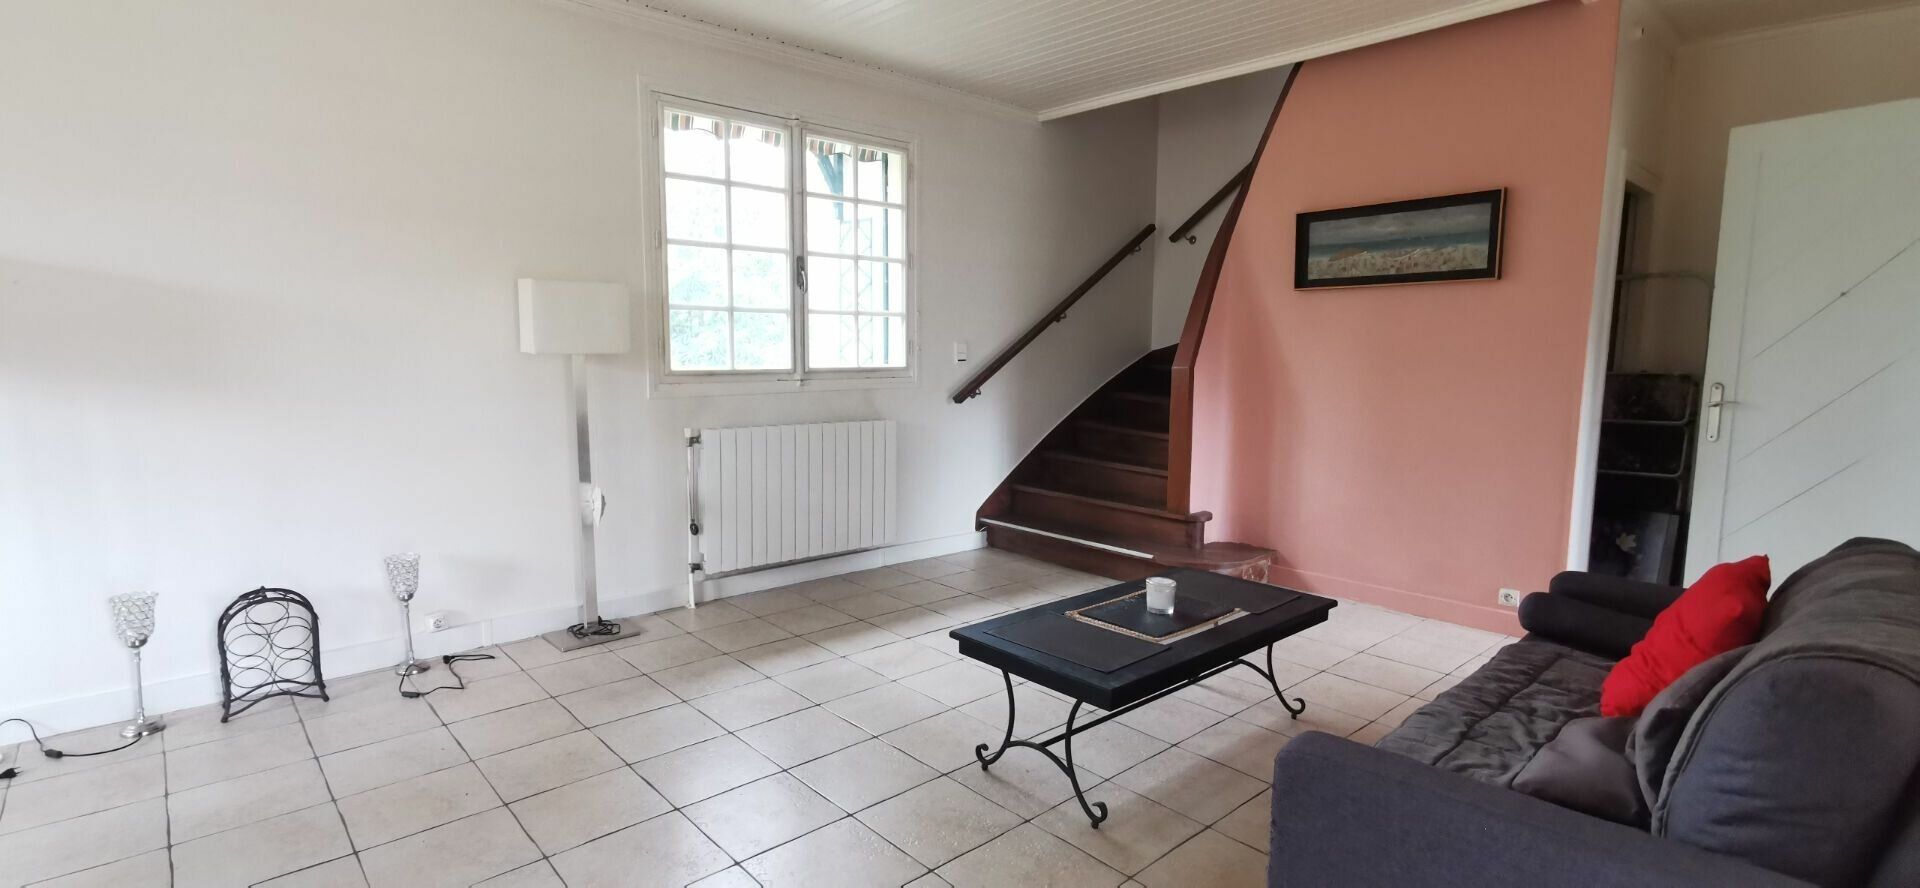 Maison à vendre 7 152m2 à Boussy-Saint-Antoine vignette-8